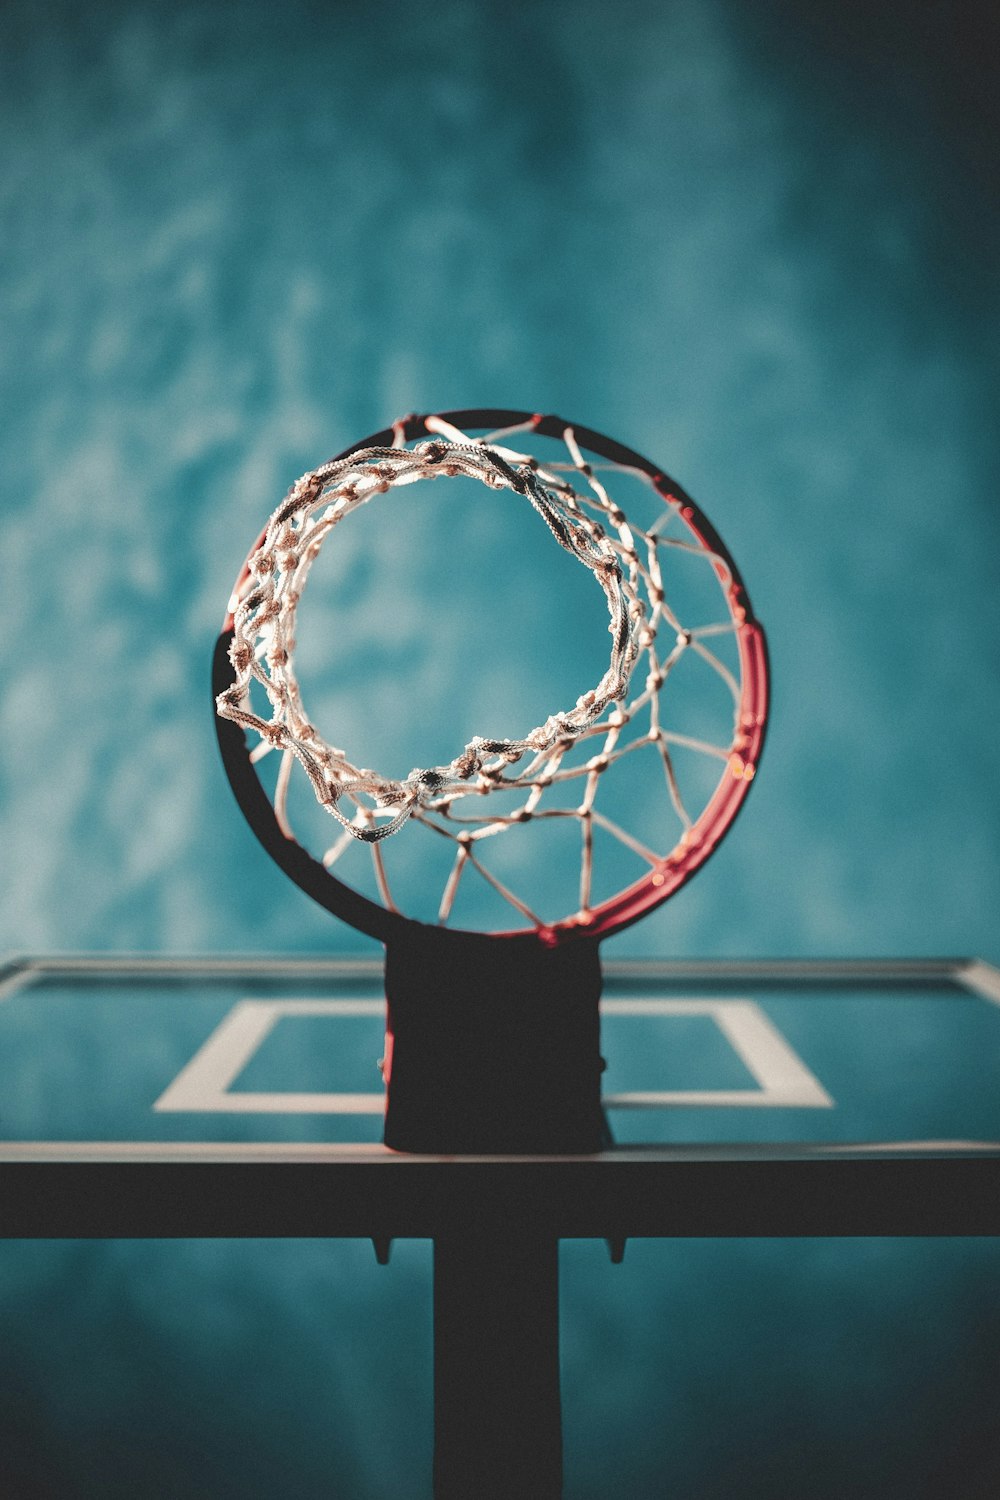 バスケットボールフープのローアングル写真